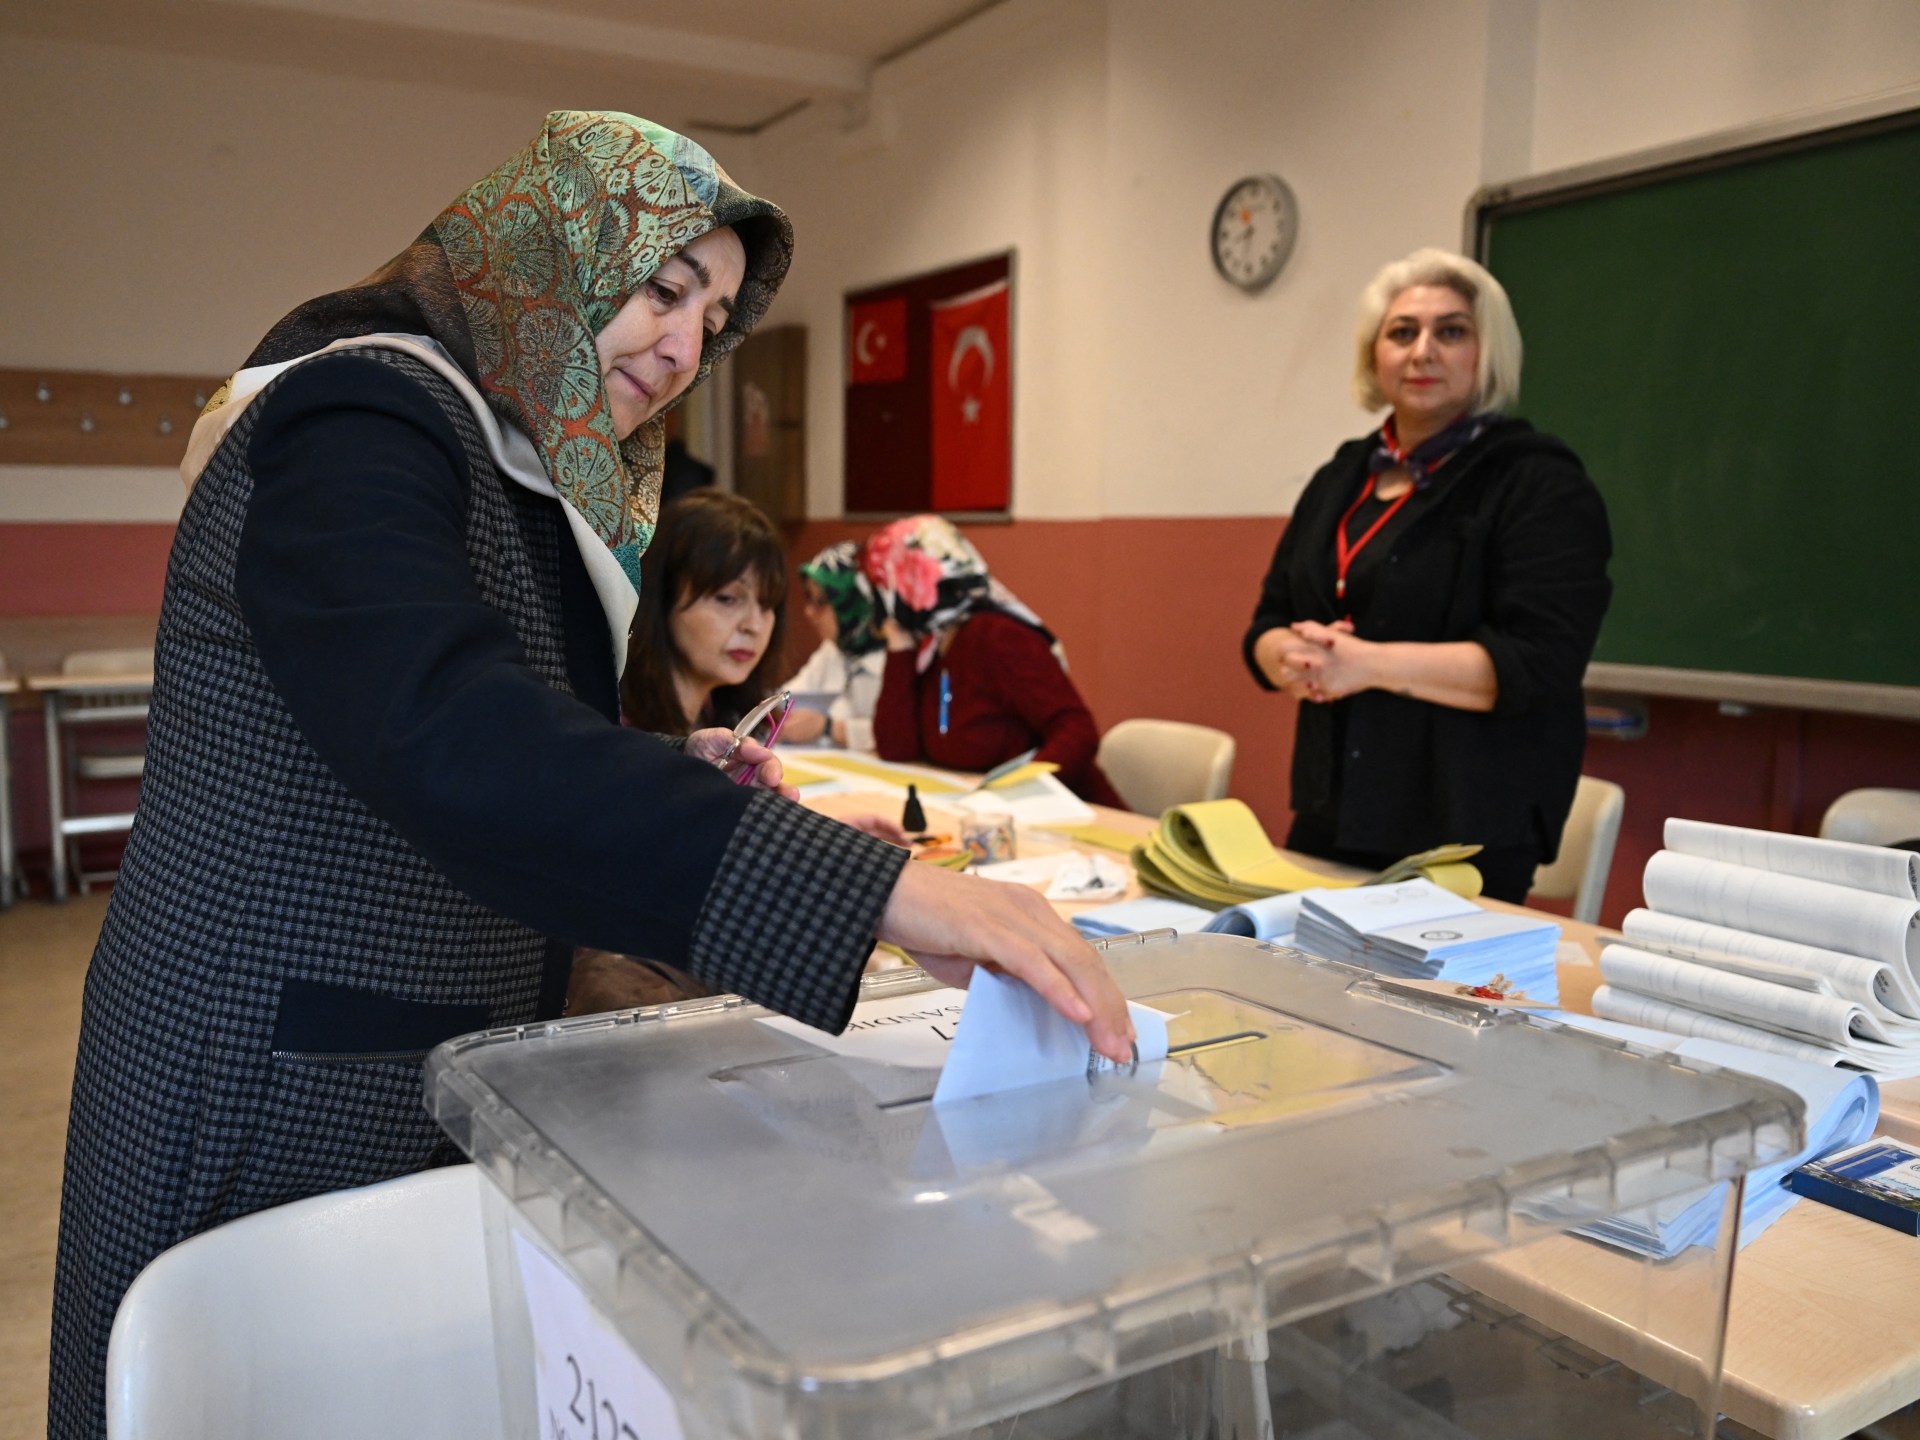 Голосование начинается на местных выборах в Турции как проверка популярности Эрдогана  Новости выборов